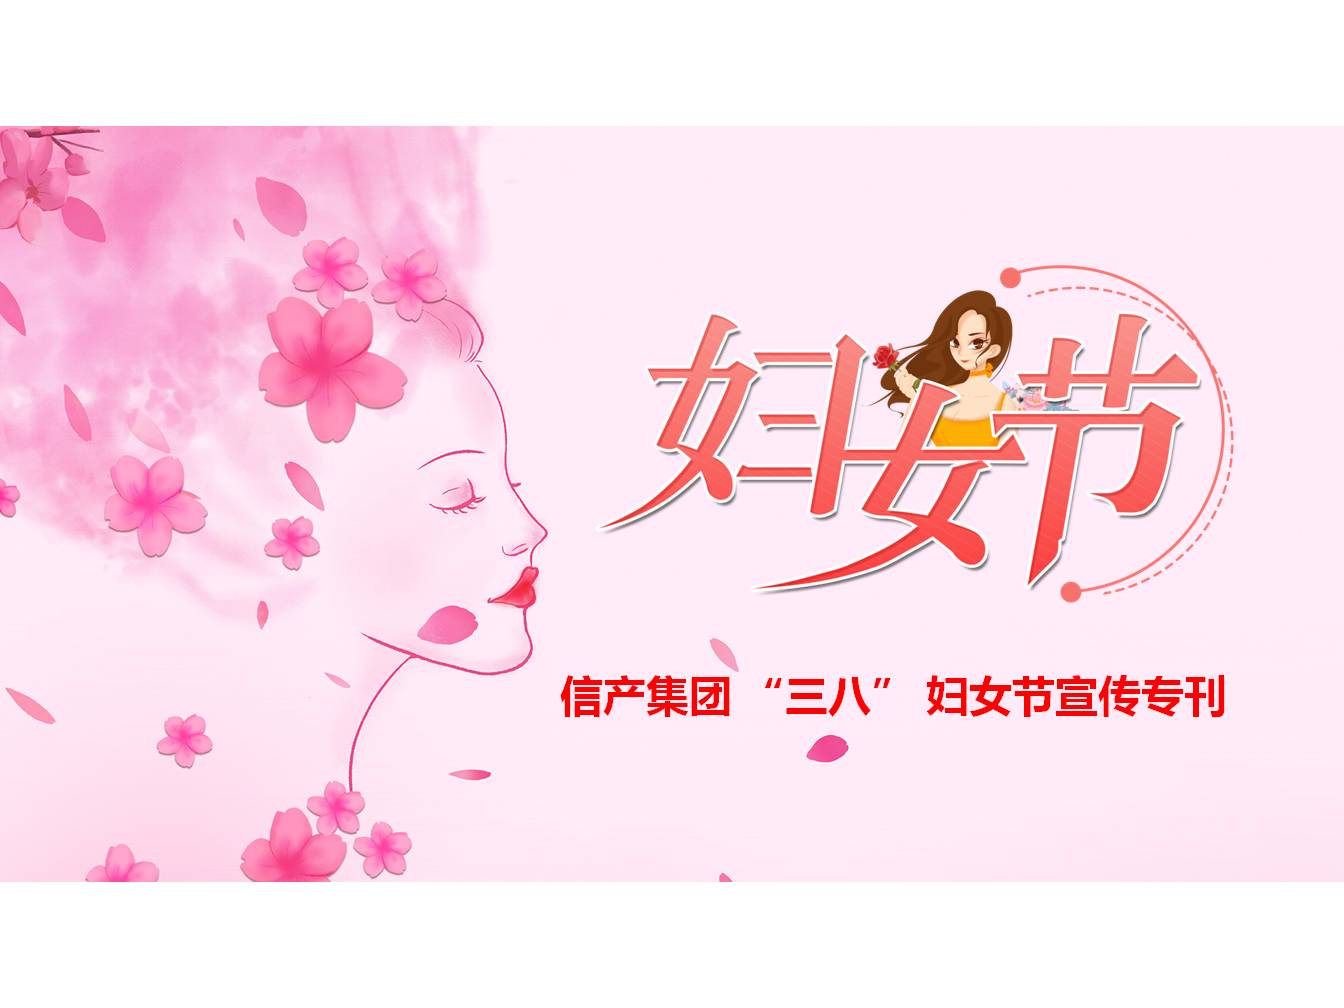 bat365在线平台(中国)责任有限公司 “三八” 妇女节宣传专刊